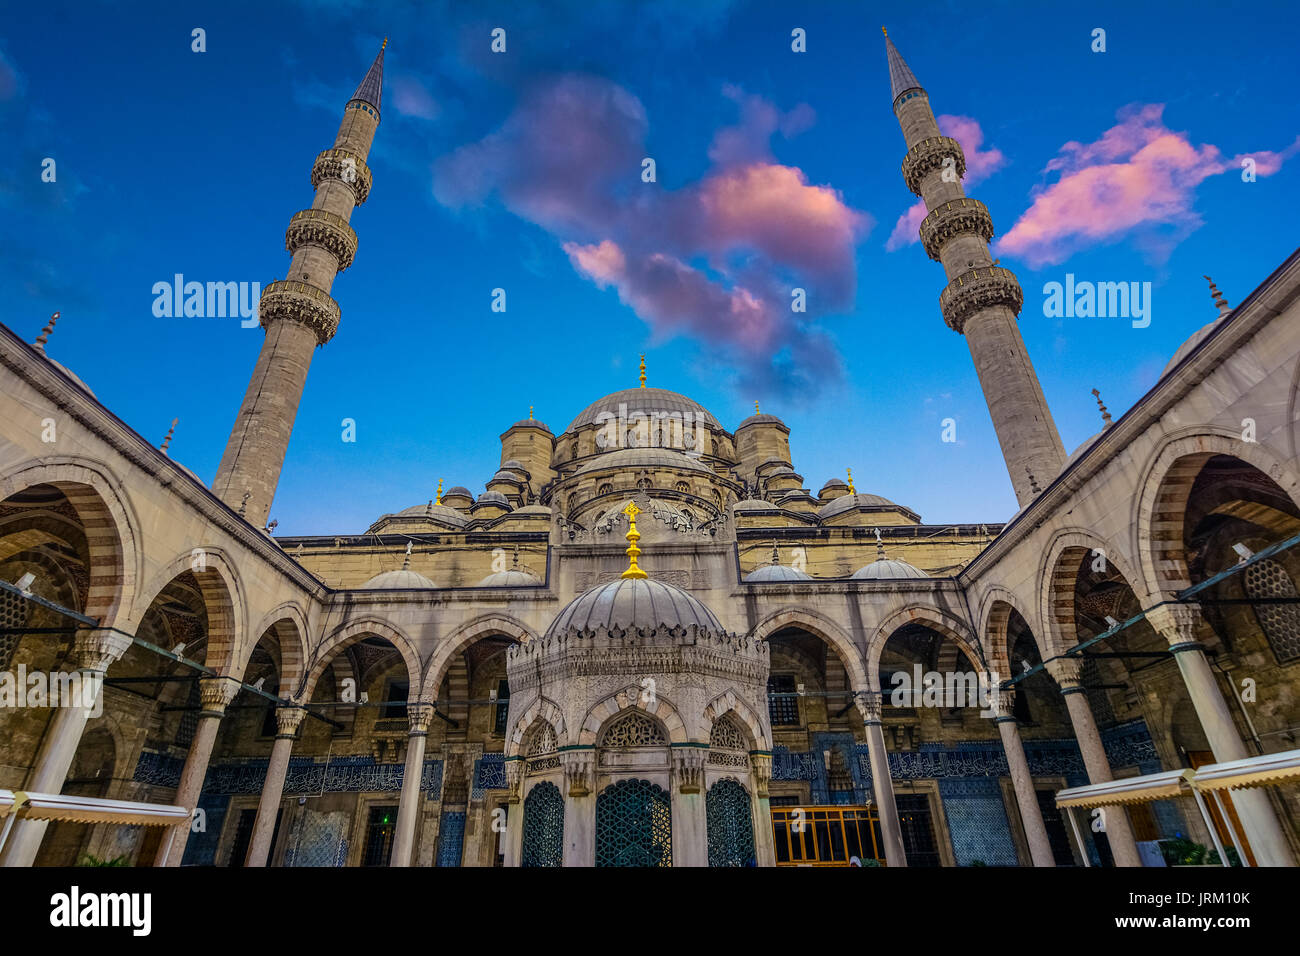 Sultan Ahmed Moschee befindet sich in der Stadt Istanbul entfernt. Es gebaut wurde während der ruel von Ahmed ich. Es ist populary wie die blaue Moschee, Istanbul bekannt ist, Cons Stockfoto